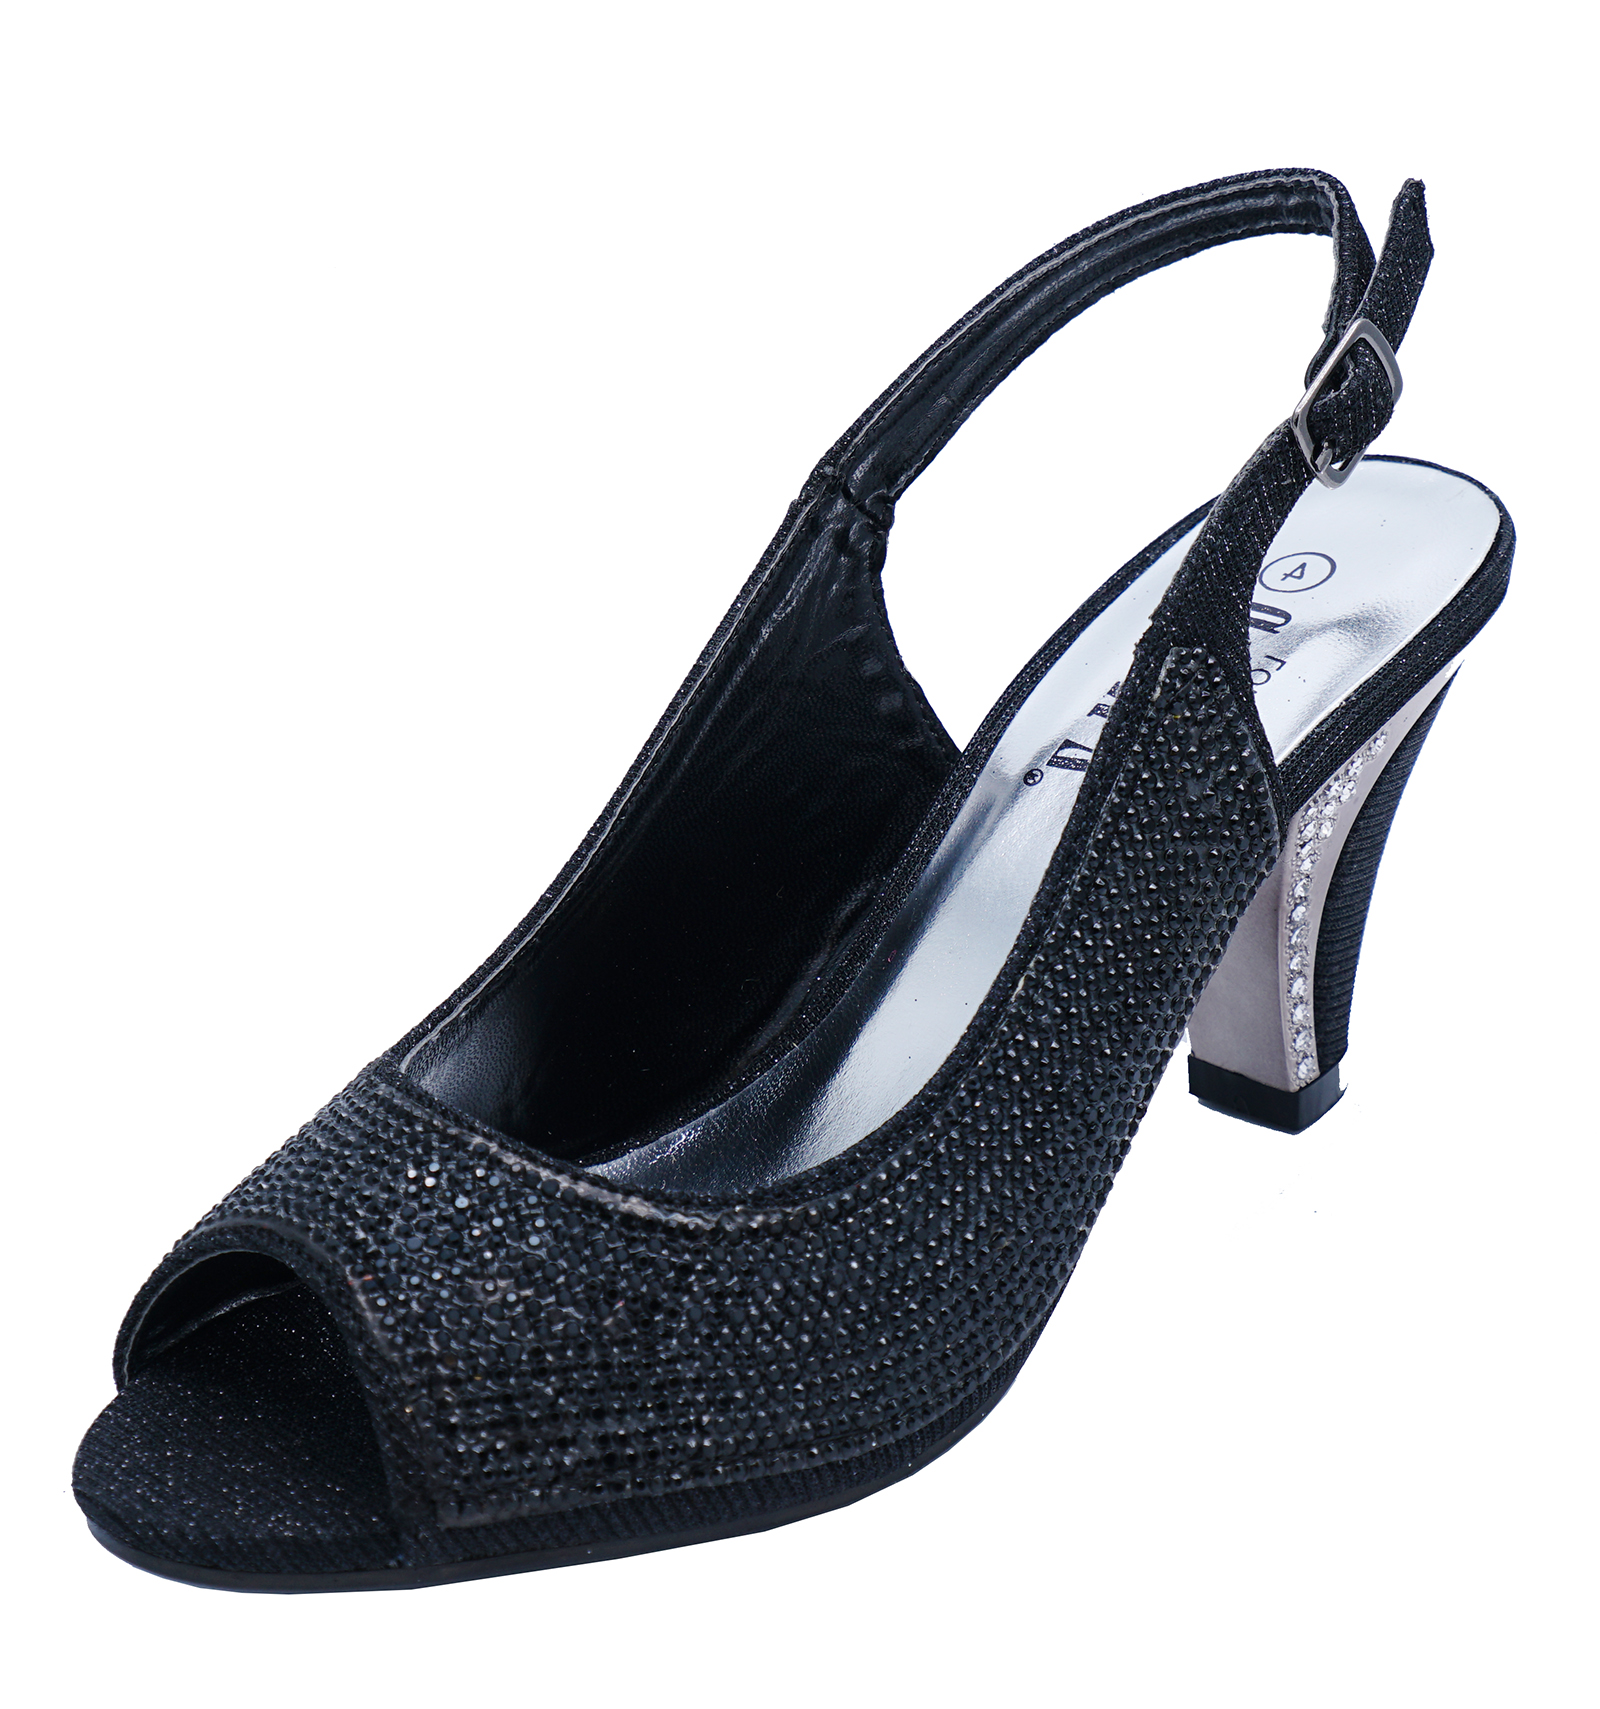 black peep toe slingback shoes